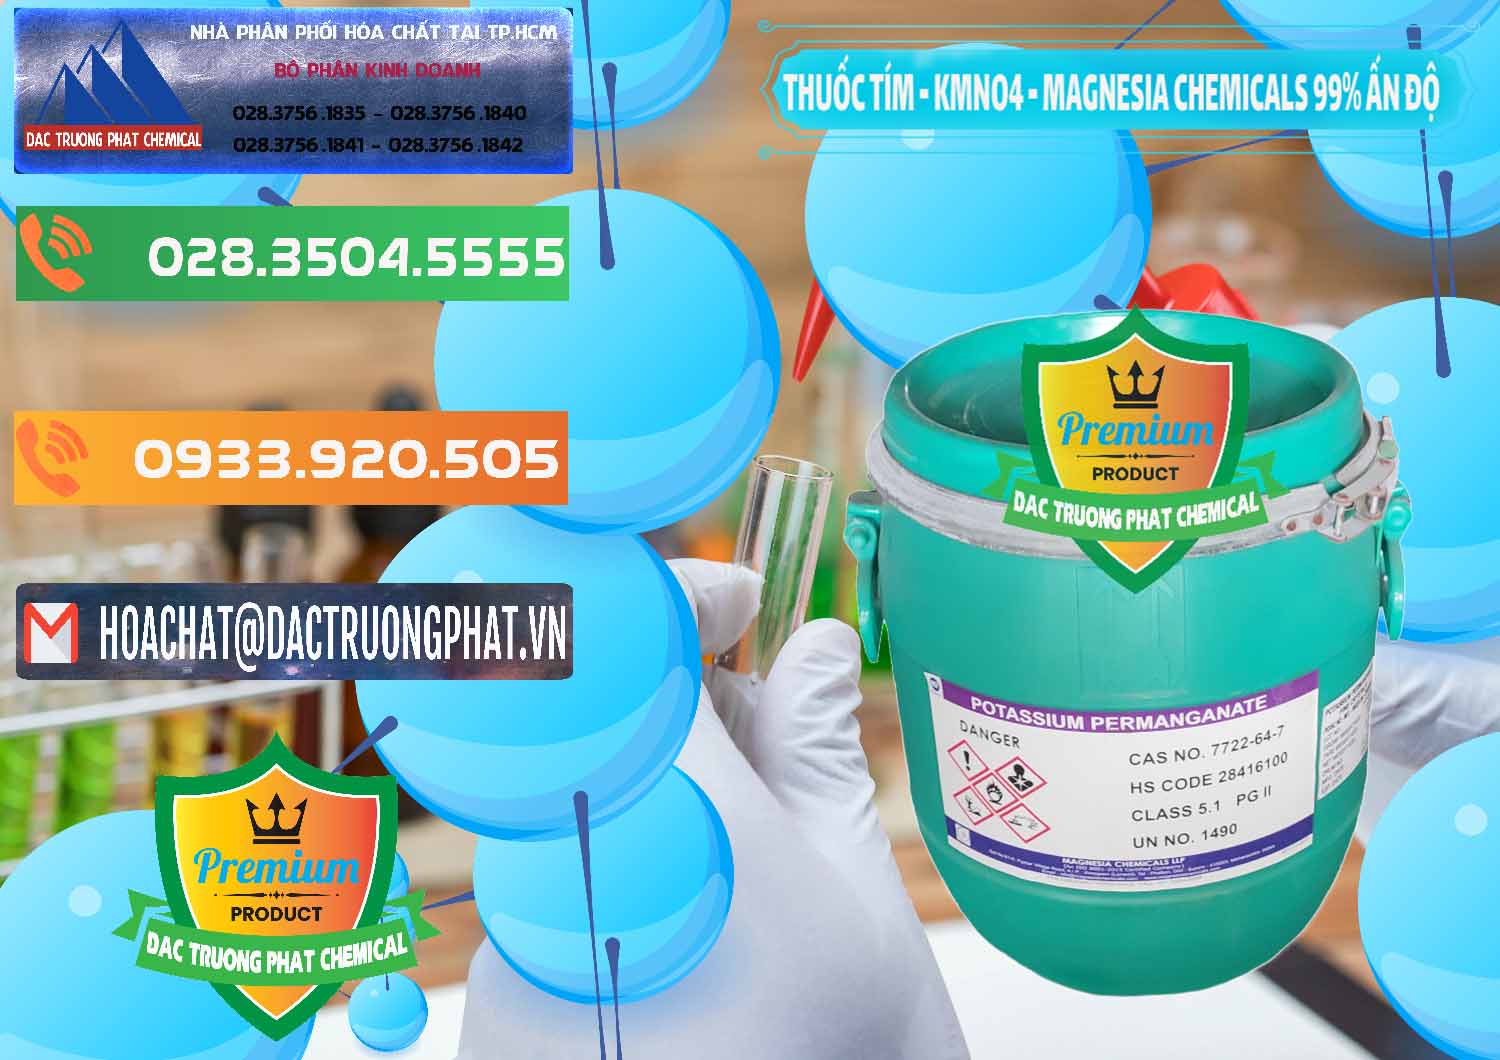 Nơi chuyên bán & cung ứng Thuốc Tím - KMNO4 Magnesia Chemicals 99% Ấn Độ India - 0251 - Cty chuyên nhập khẩu _ cung cấp hóa chất tại TP.HCM - hoachatxulynuoc.com.vn